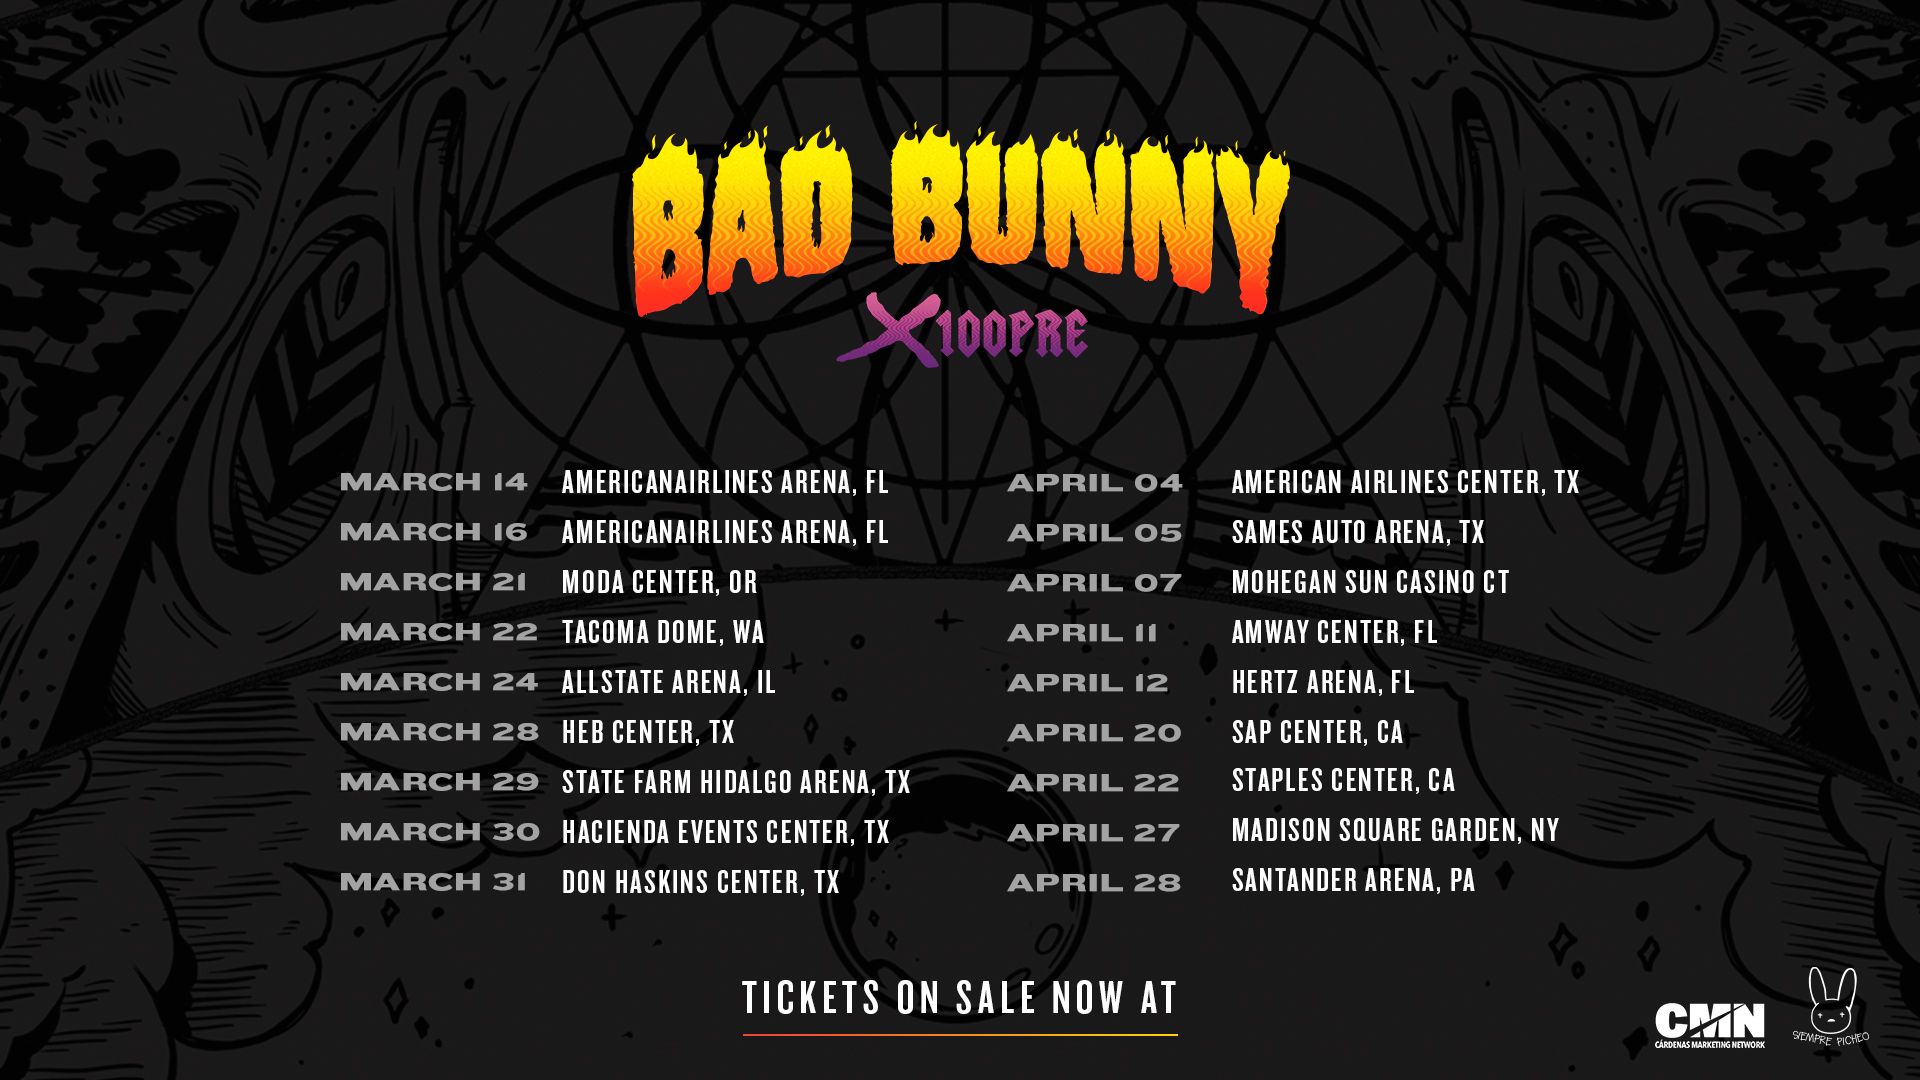 BAD BUNNY anuncia fecha adicional “X .wowlarevista.com